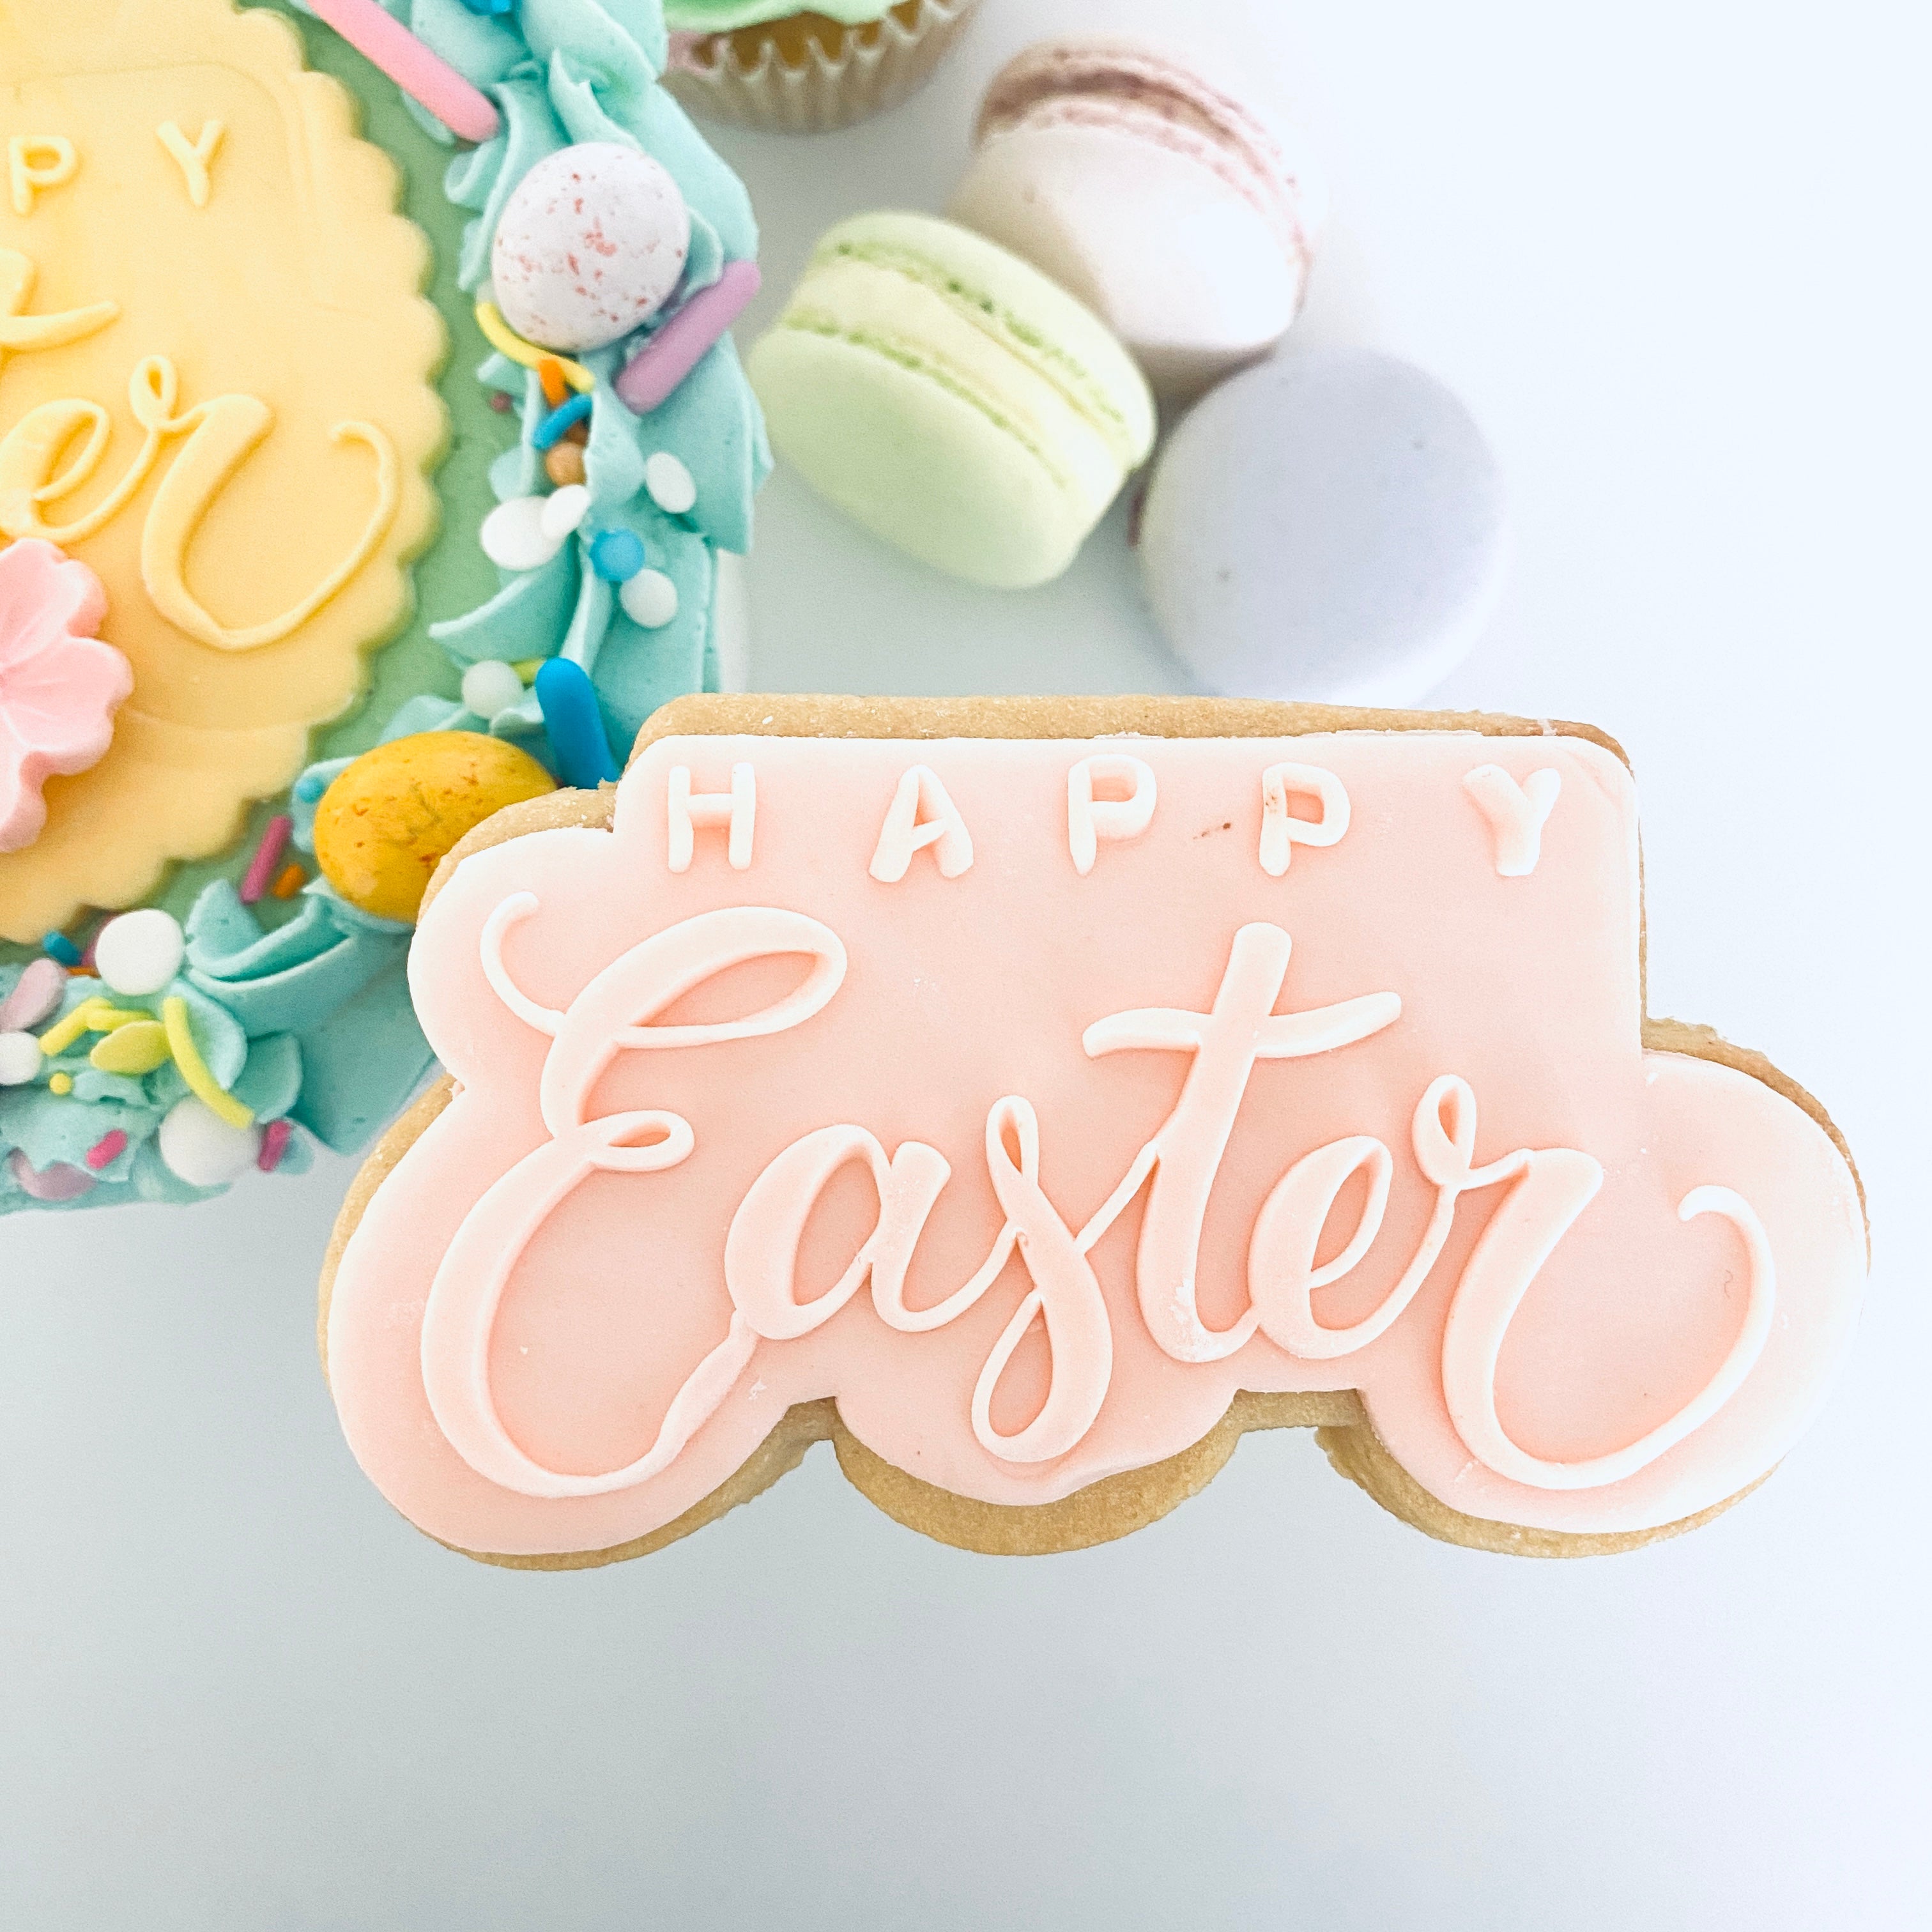 Happy Easter Sugar Cookie